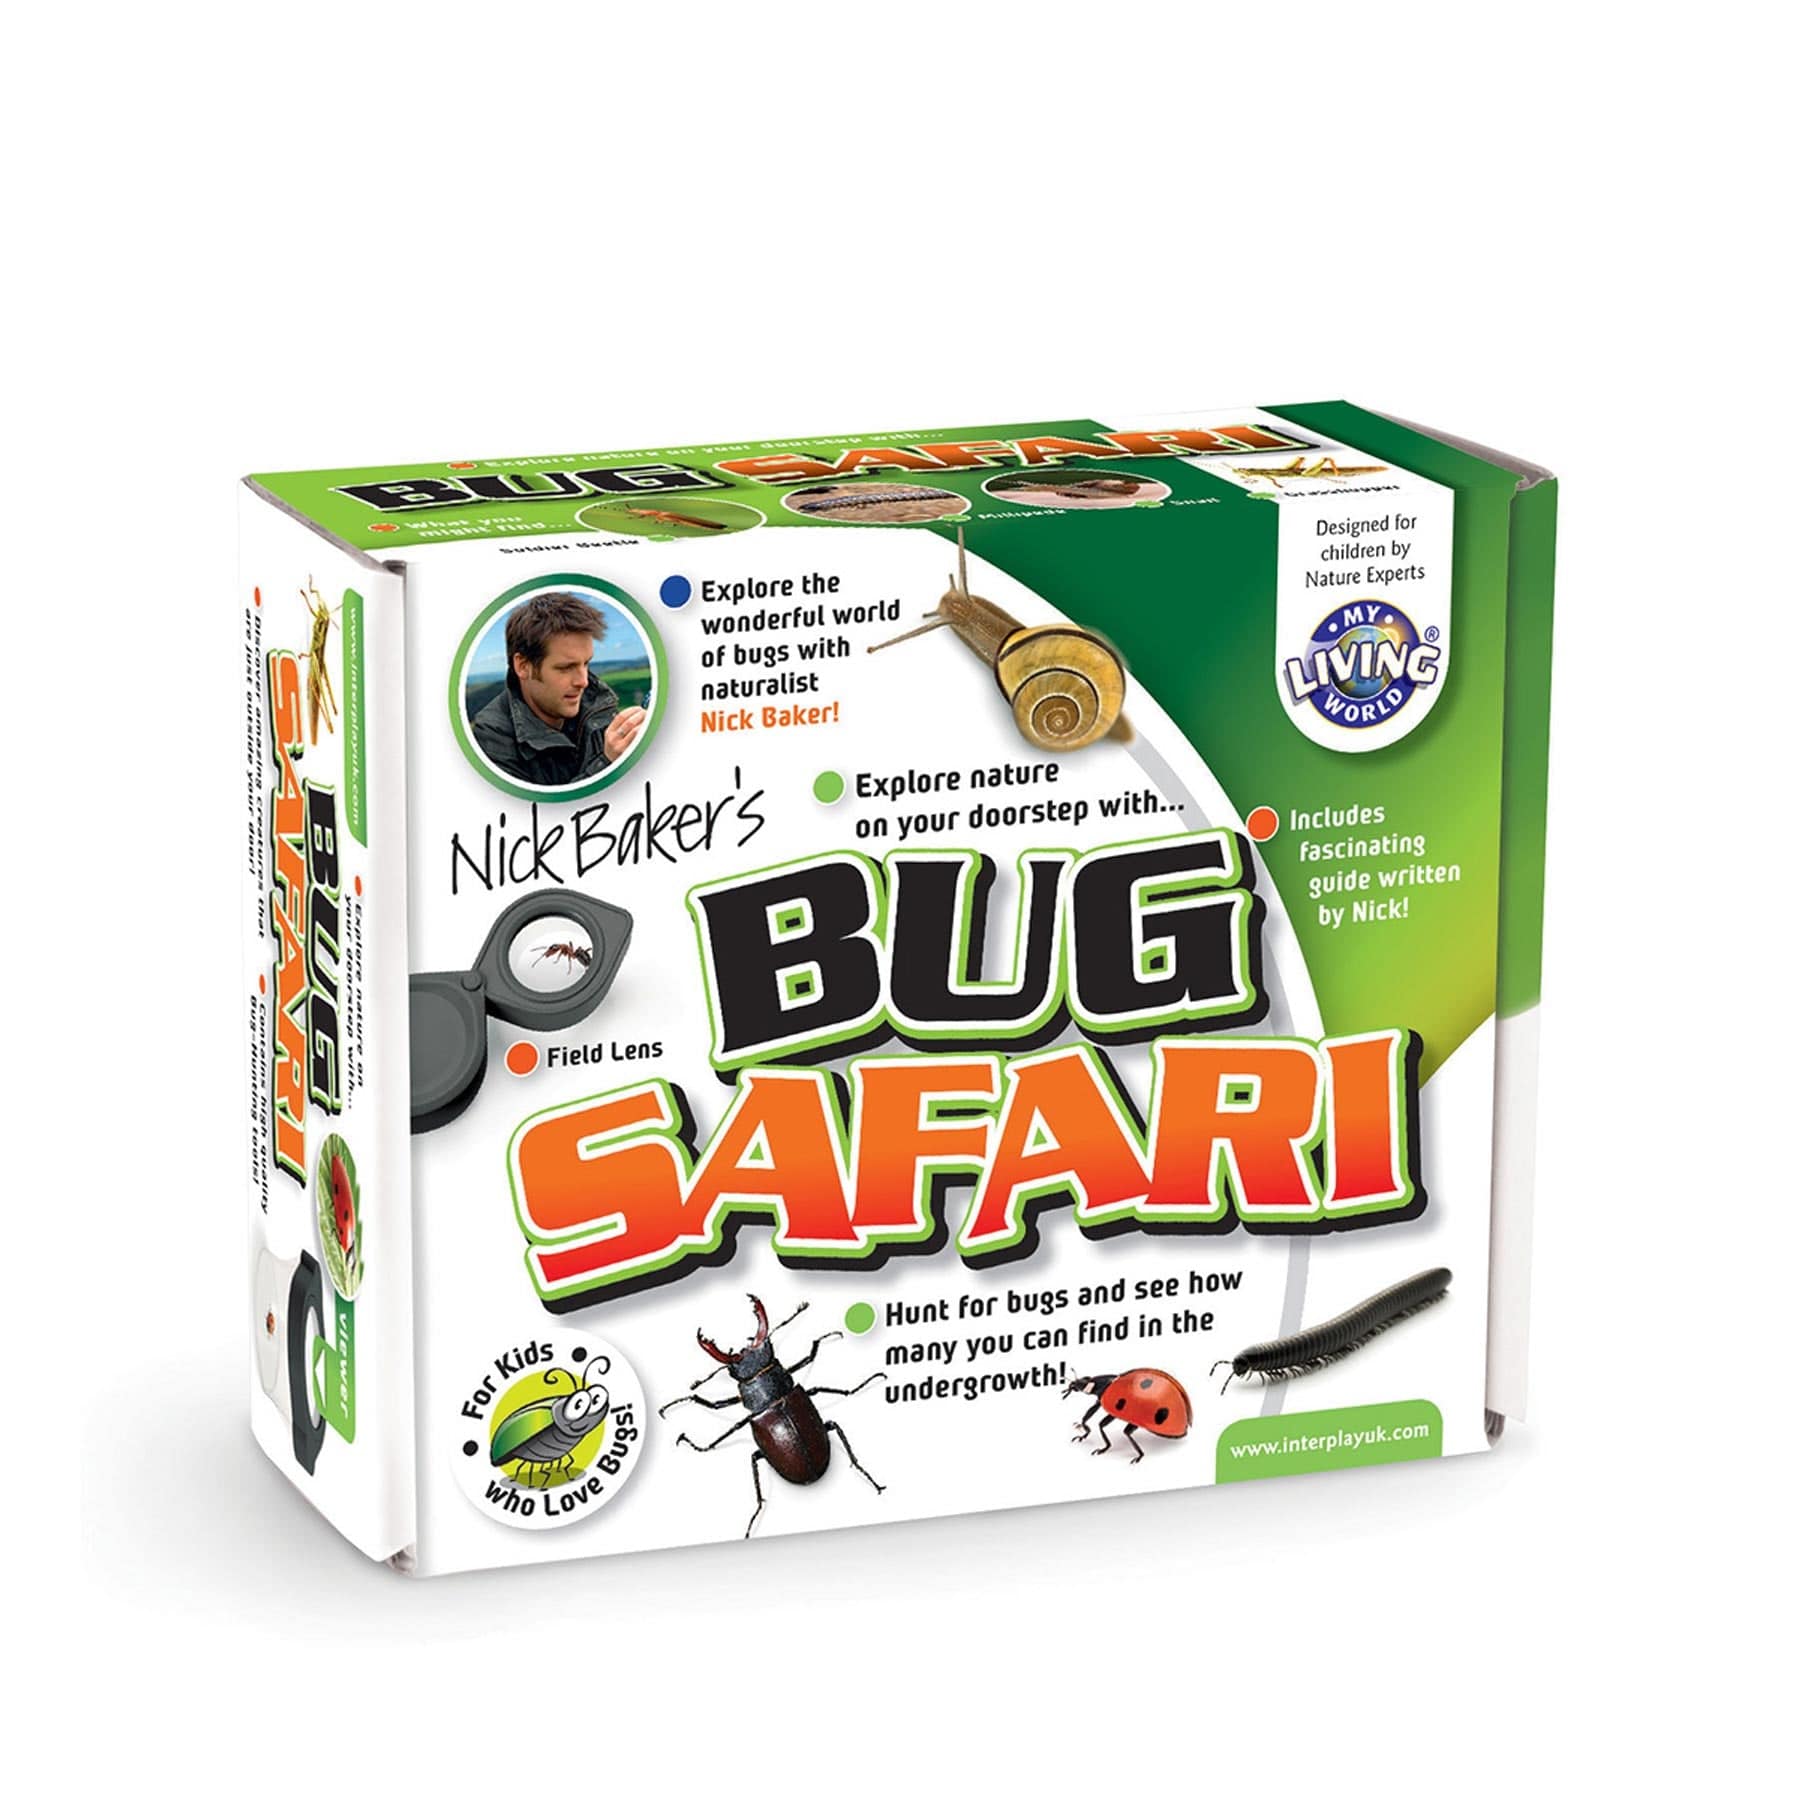 My living world bug safari